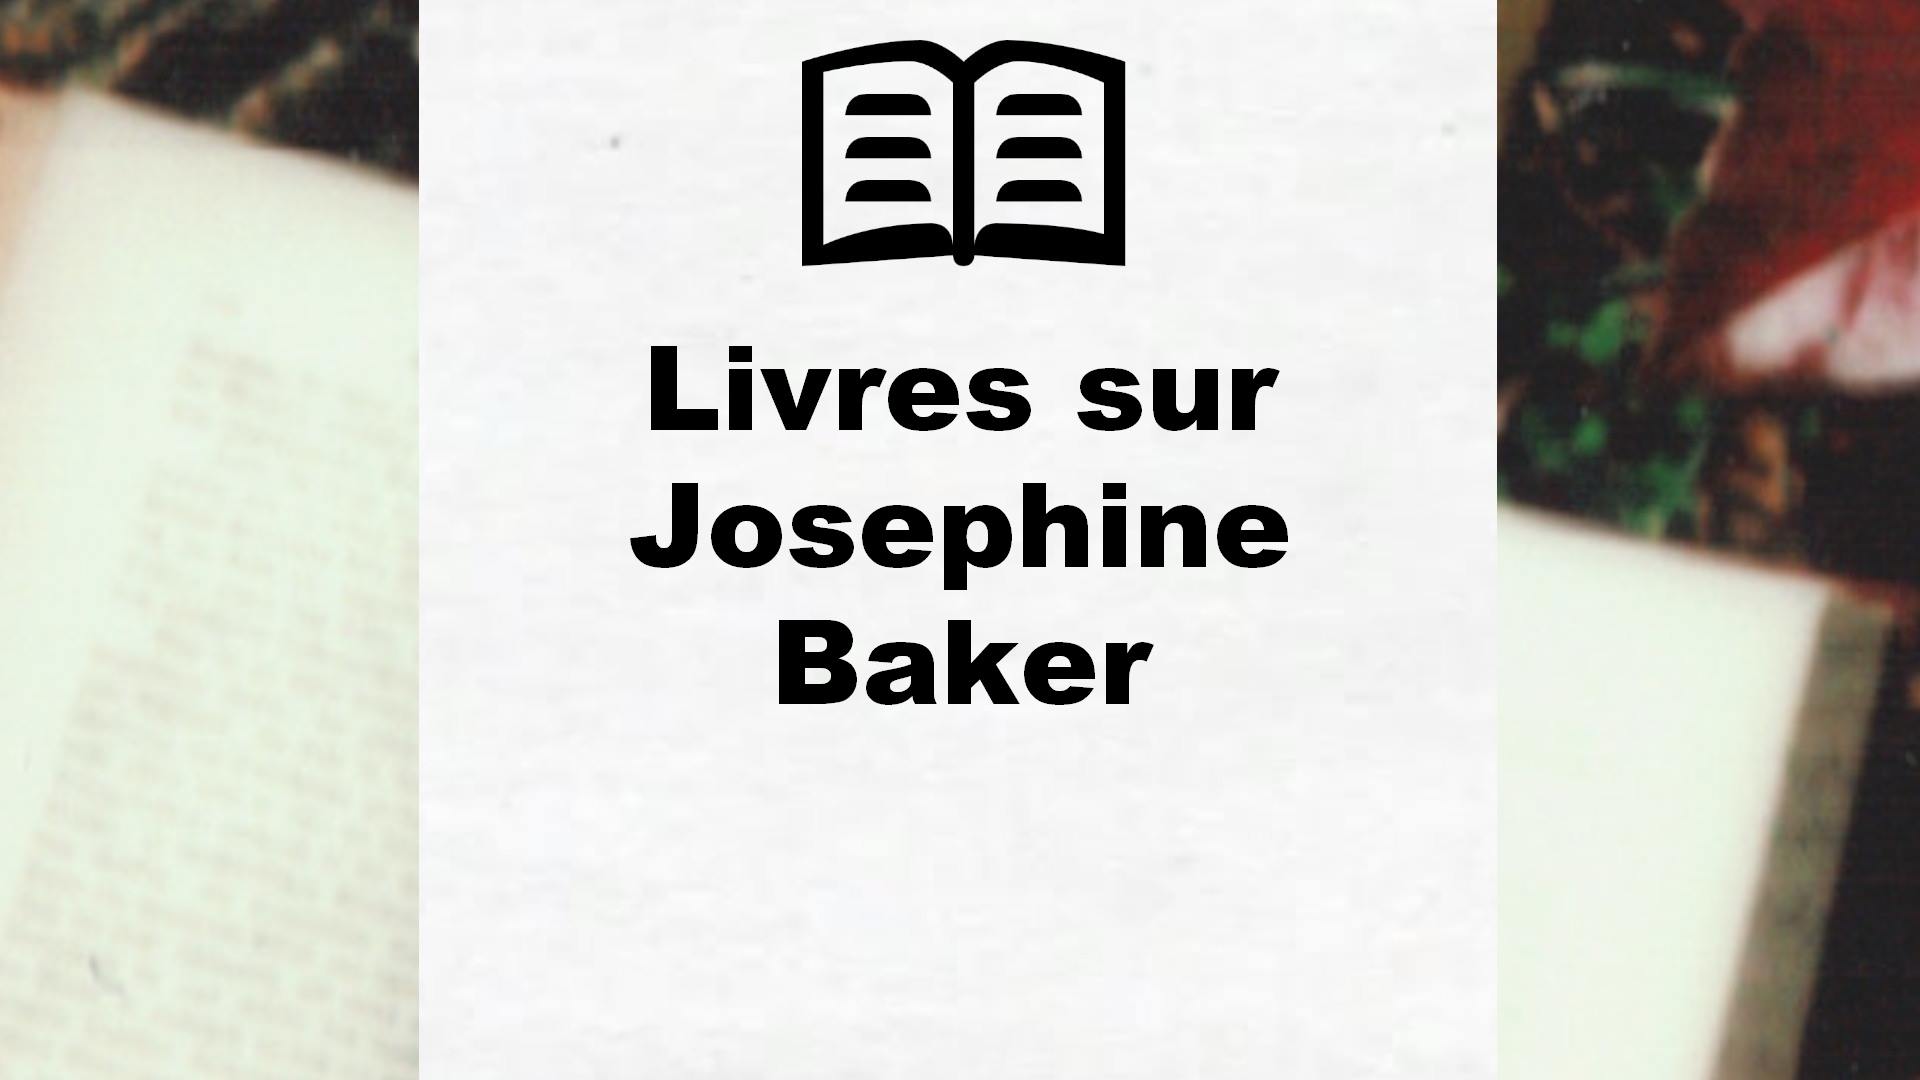 Livres sur Josephine Baker